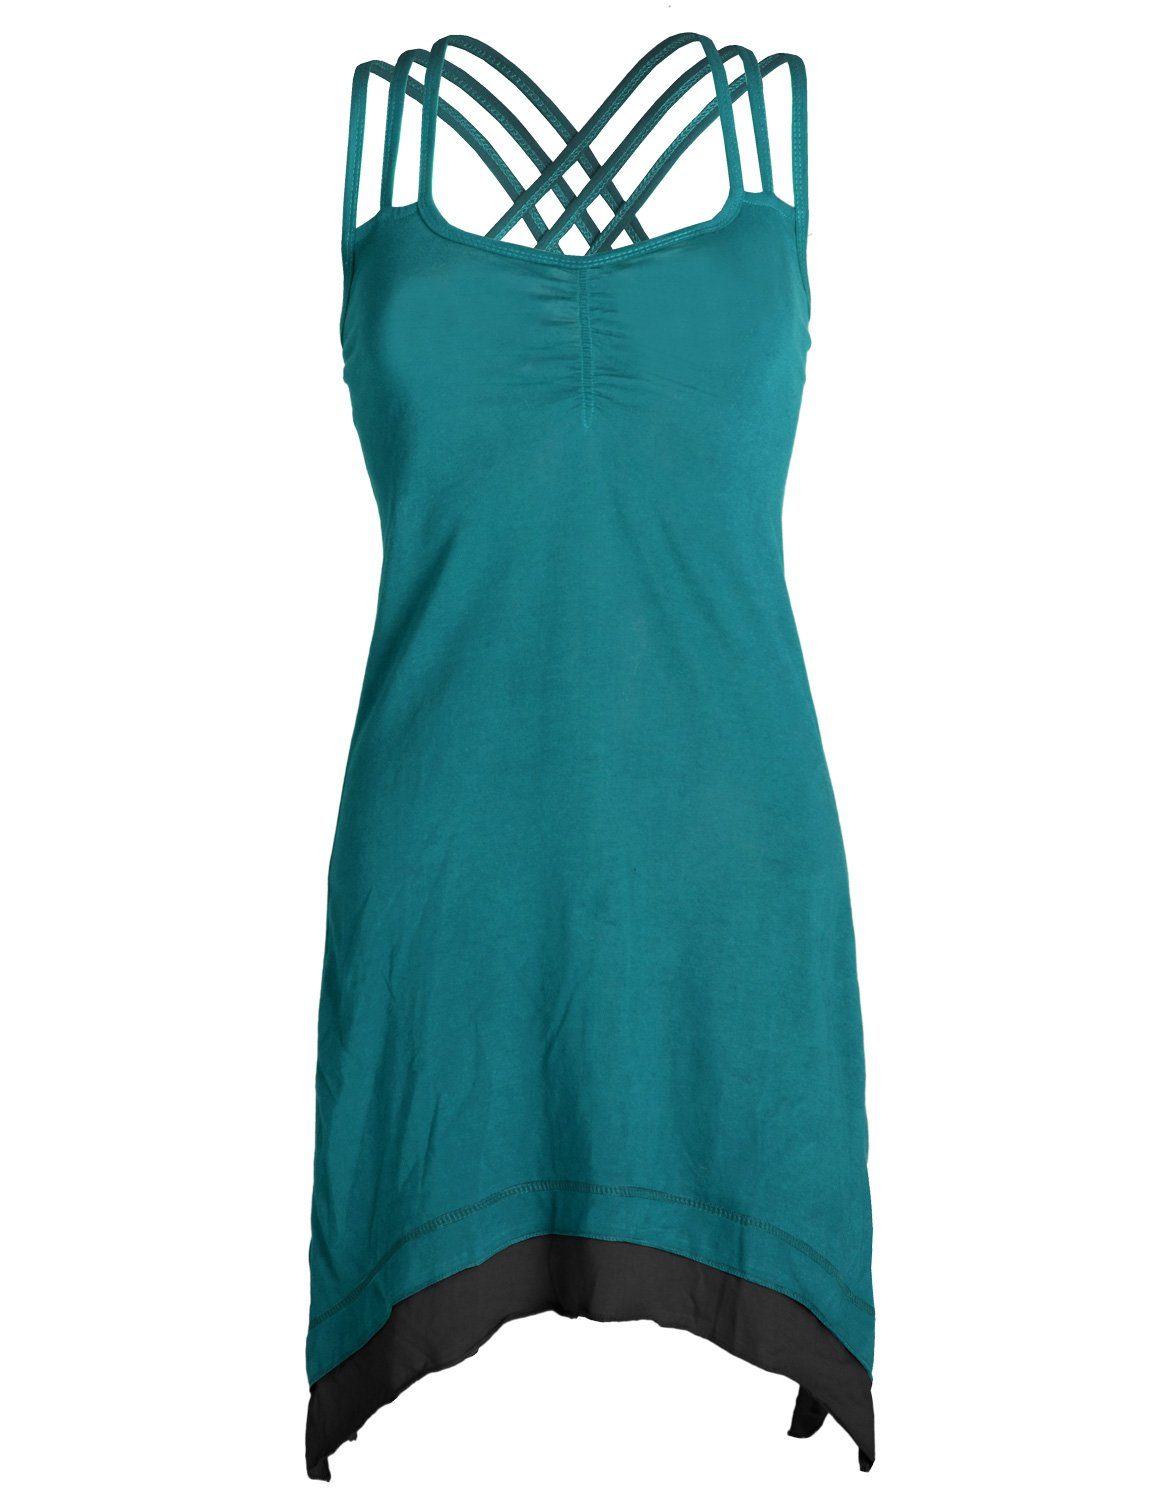 Vishes Sommerkleid Lagenlook Trägerkleid Organic Cotton mit Zipfeln Elfen, Hippie, Boho Style türkis